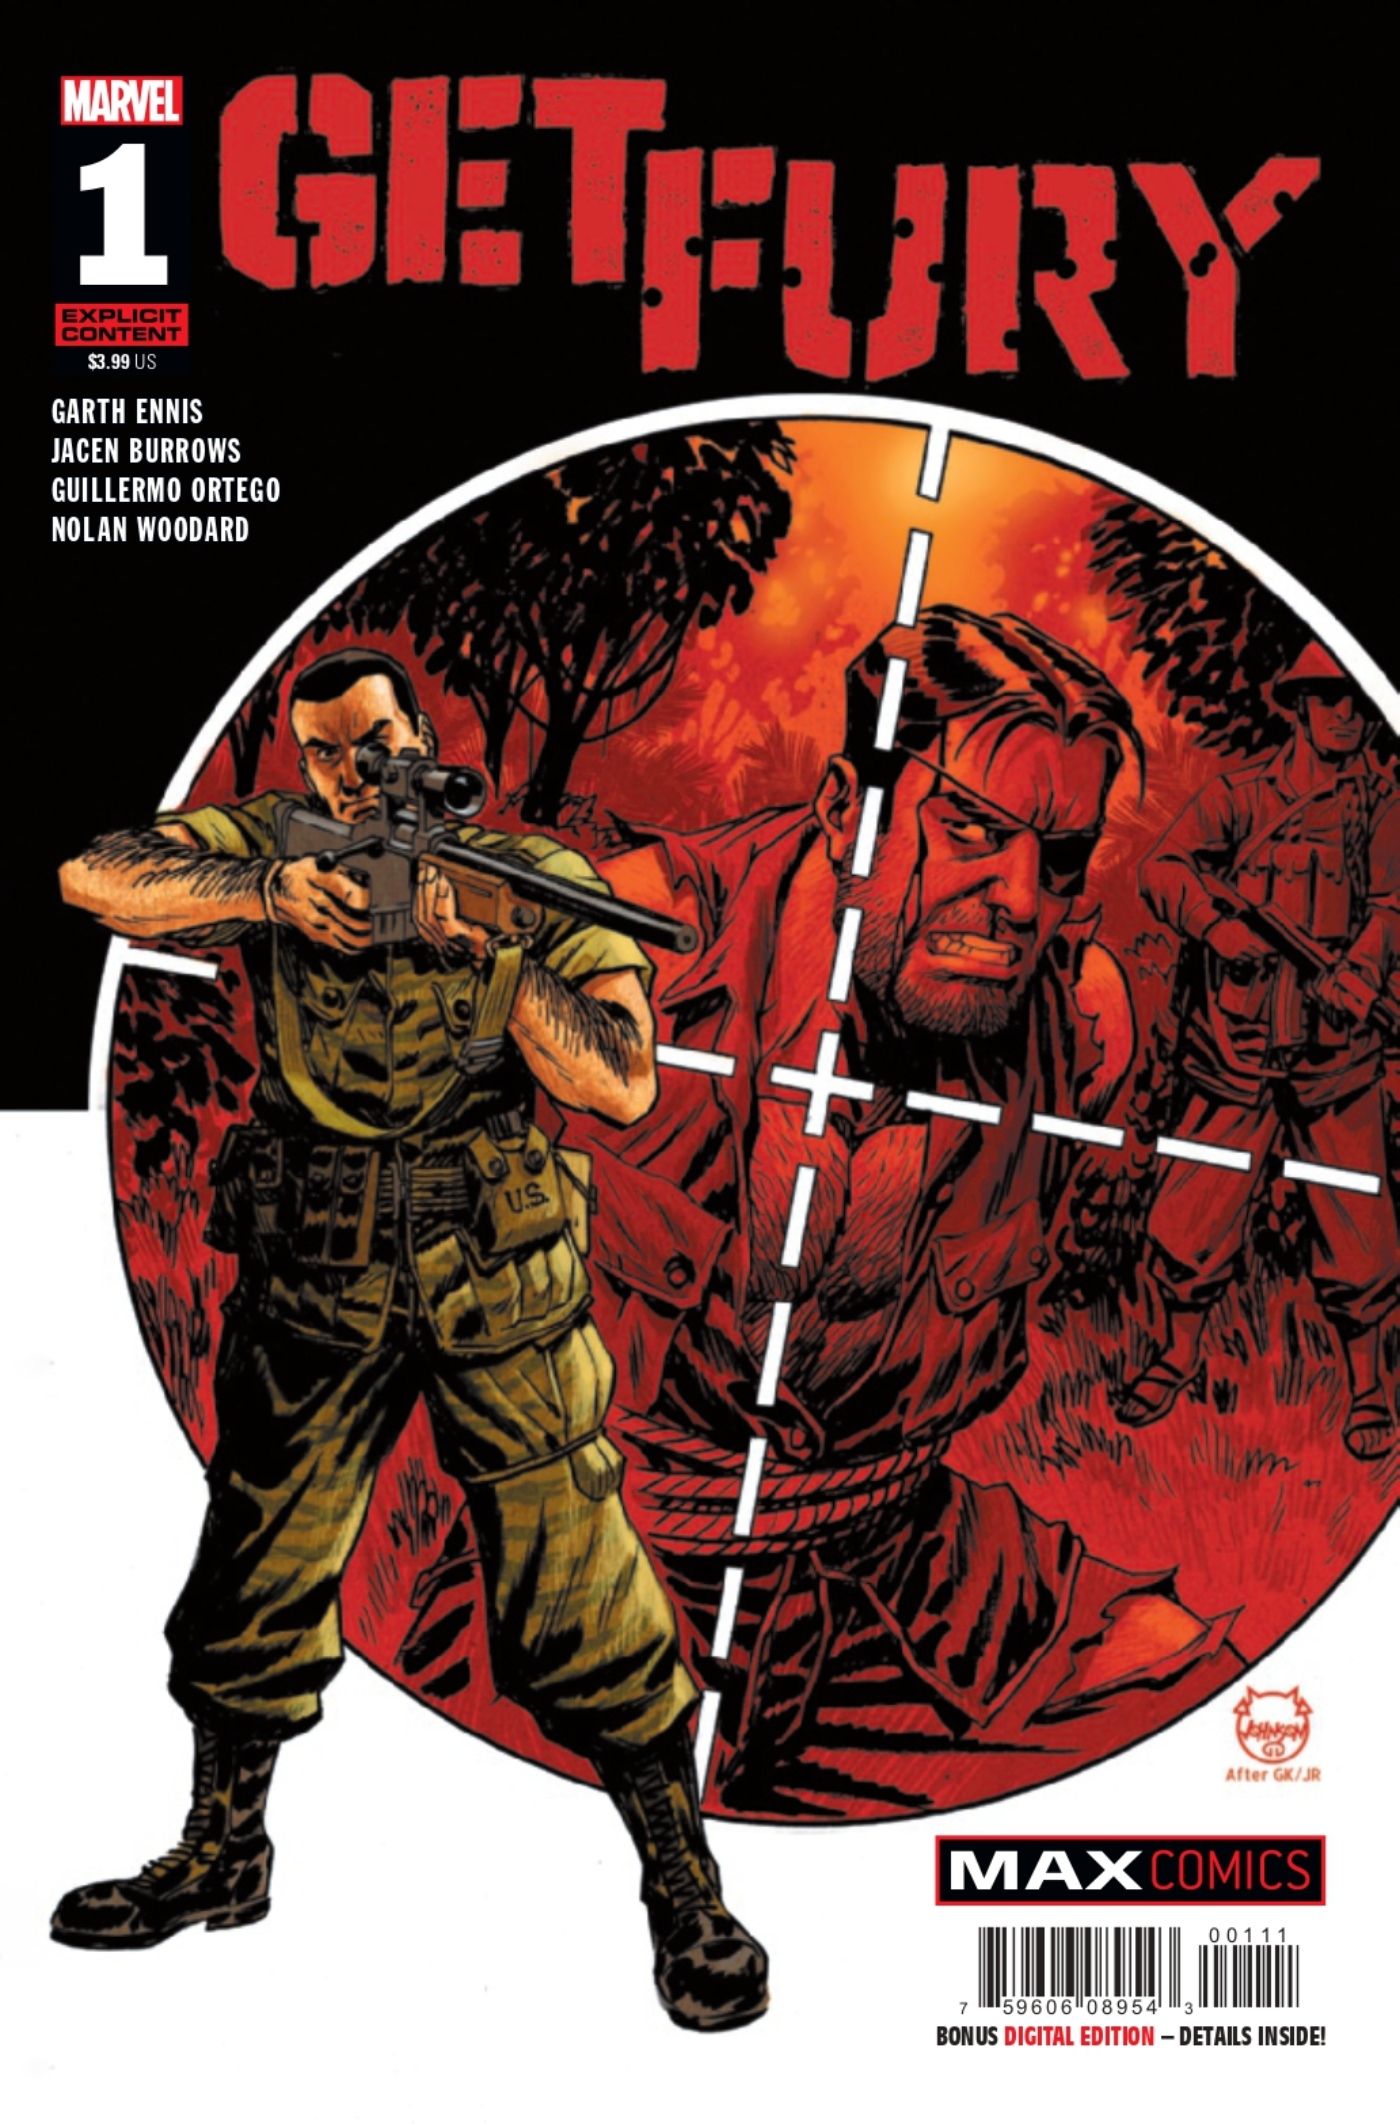 Obtenha a capa em quadrinhos do Fury # 1 apresentando o Justiceiro com Nick Fury em sua mira.